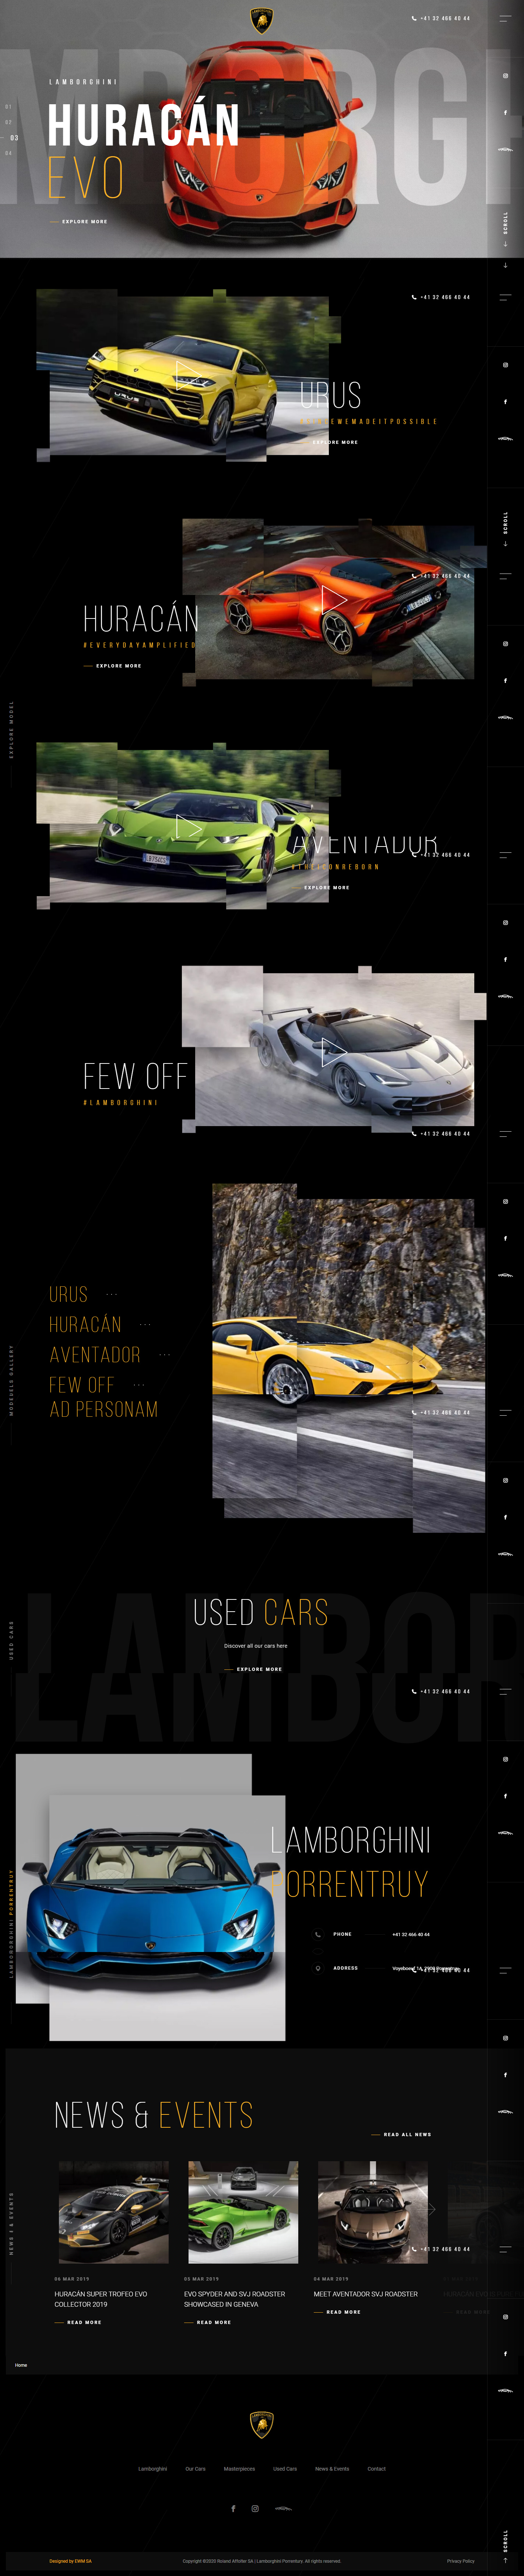 兰博基尼 Lamborghini Porrentruy汽车网站设计